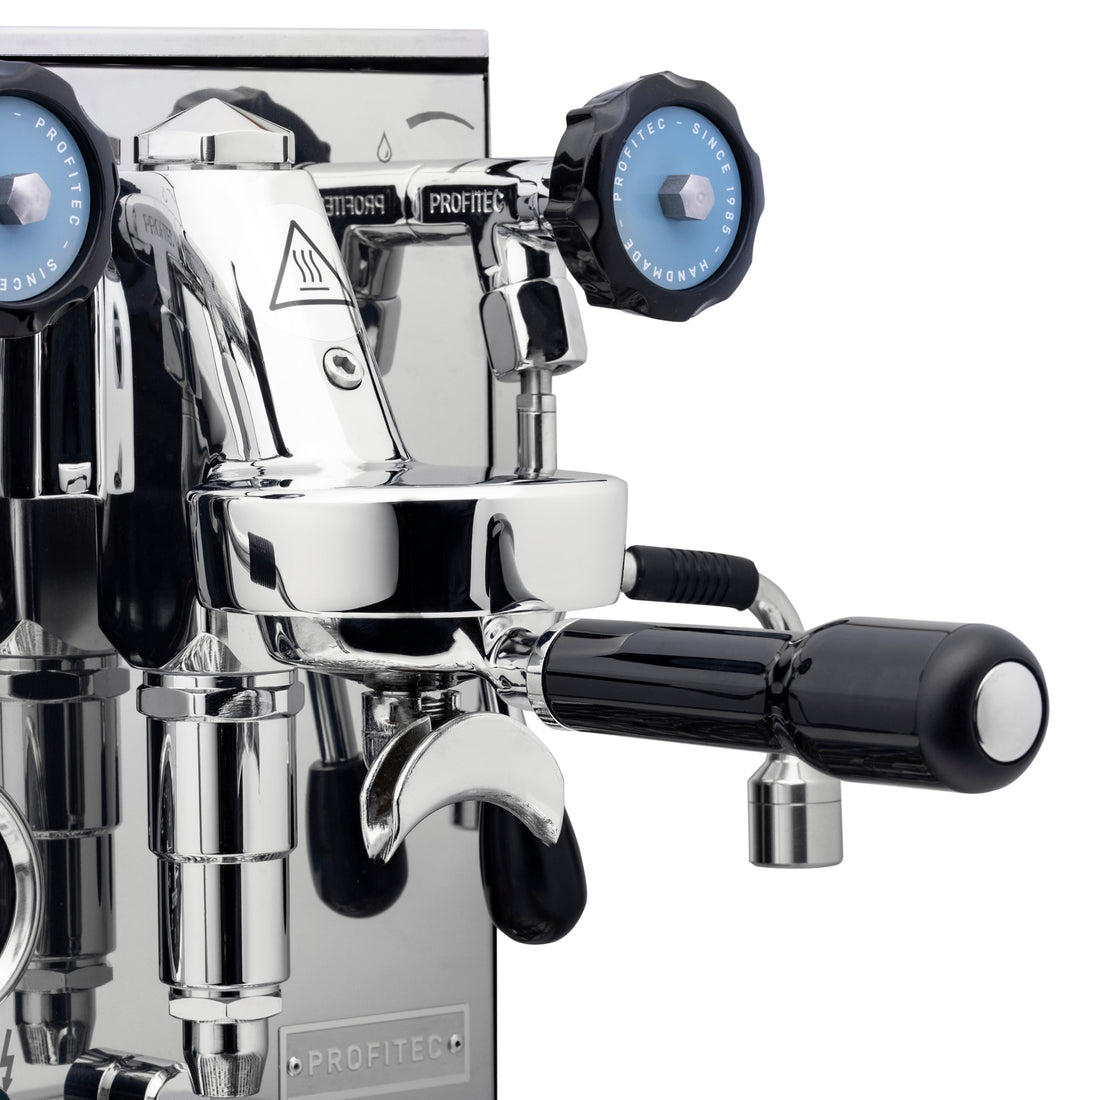 Profitec Pro 400 Espresso Machine in Matte White with Blackened Oak